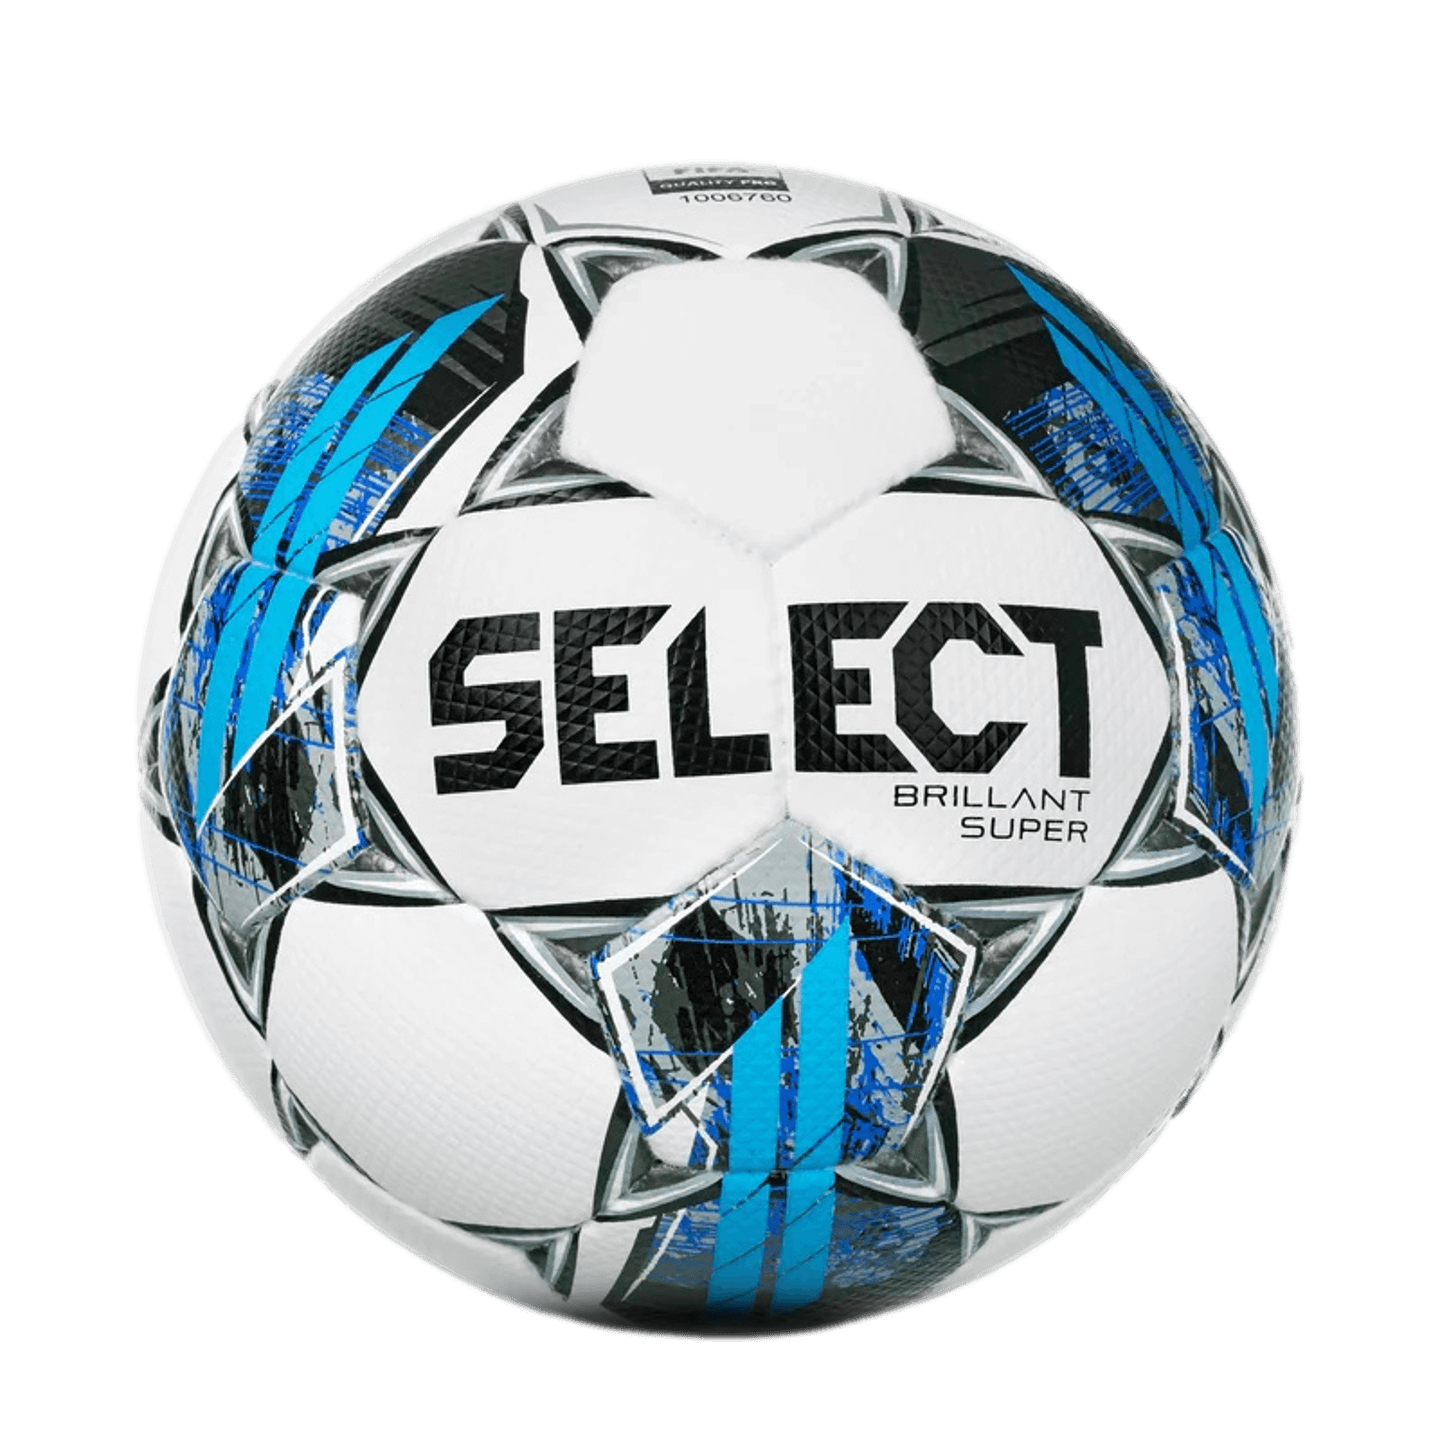 Selezionare, Seleziona il pallone da calcio Brillant Super V22